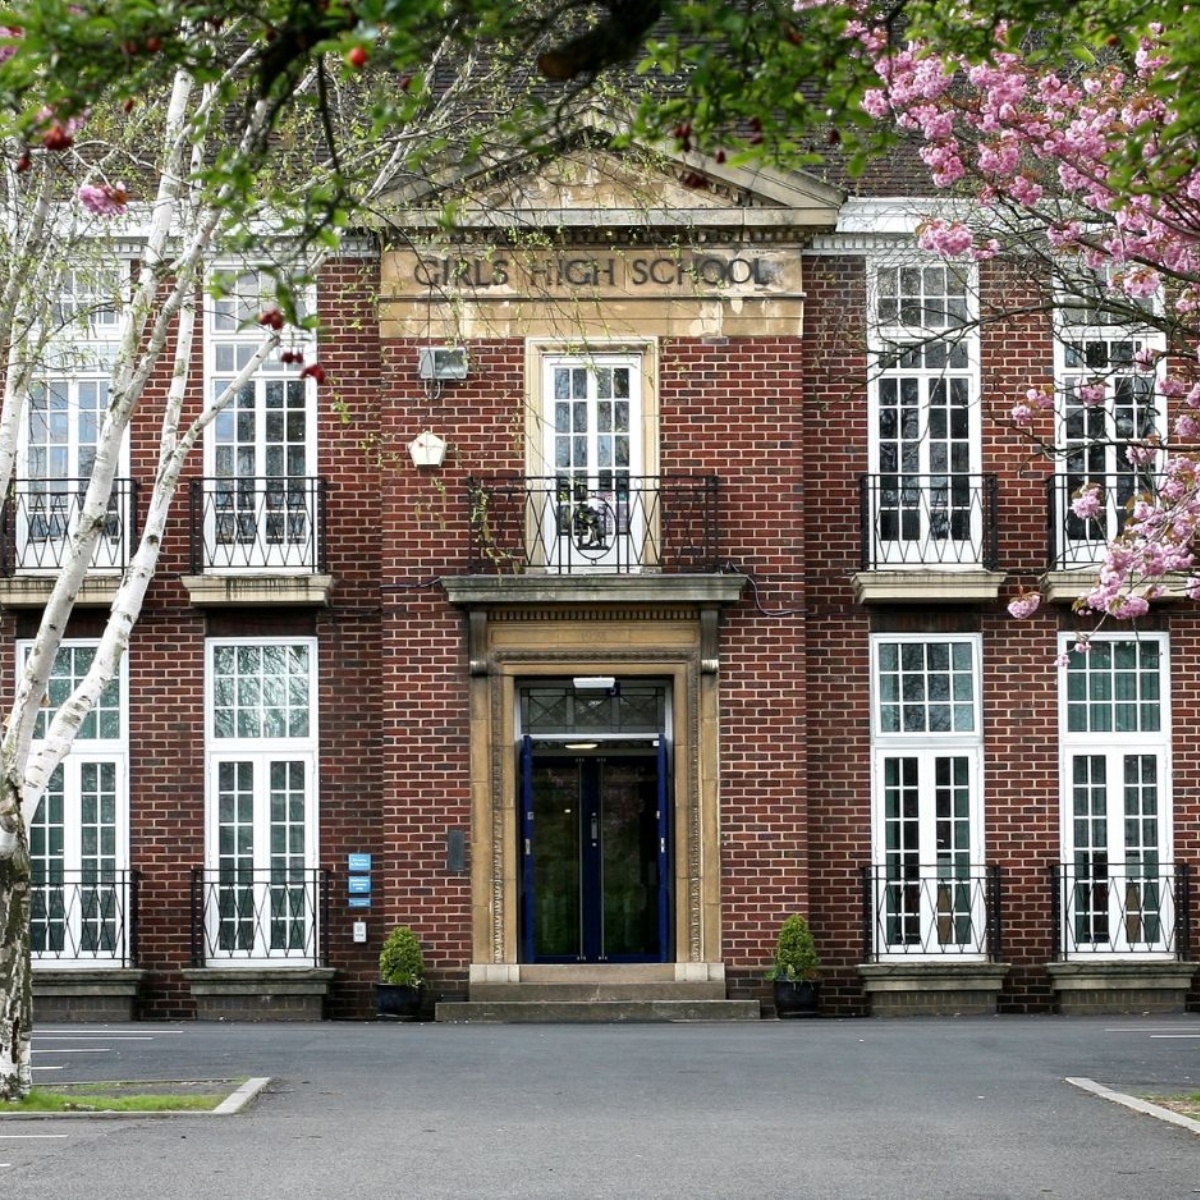 Sutton Coldfield Grammar School for Girls